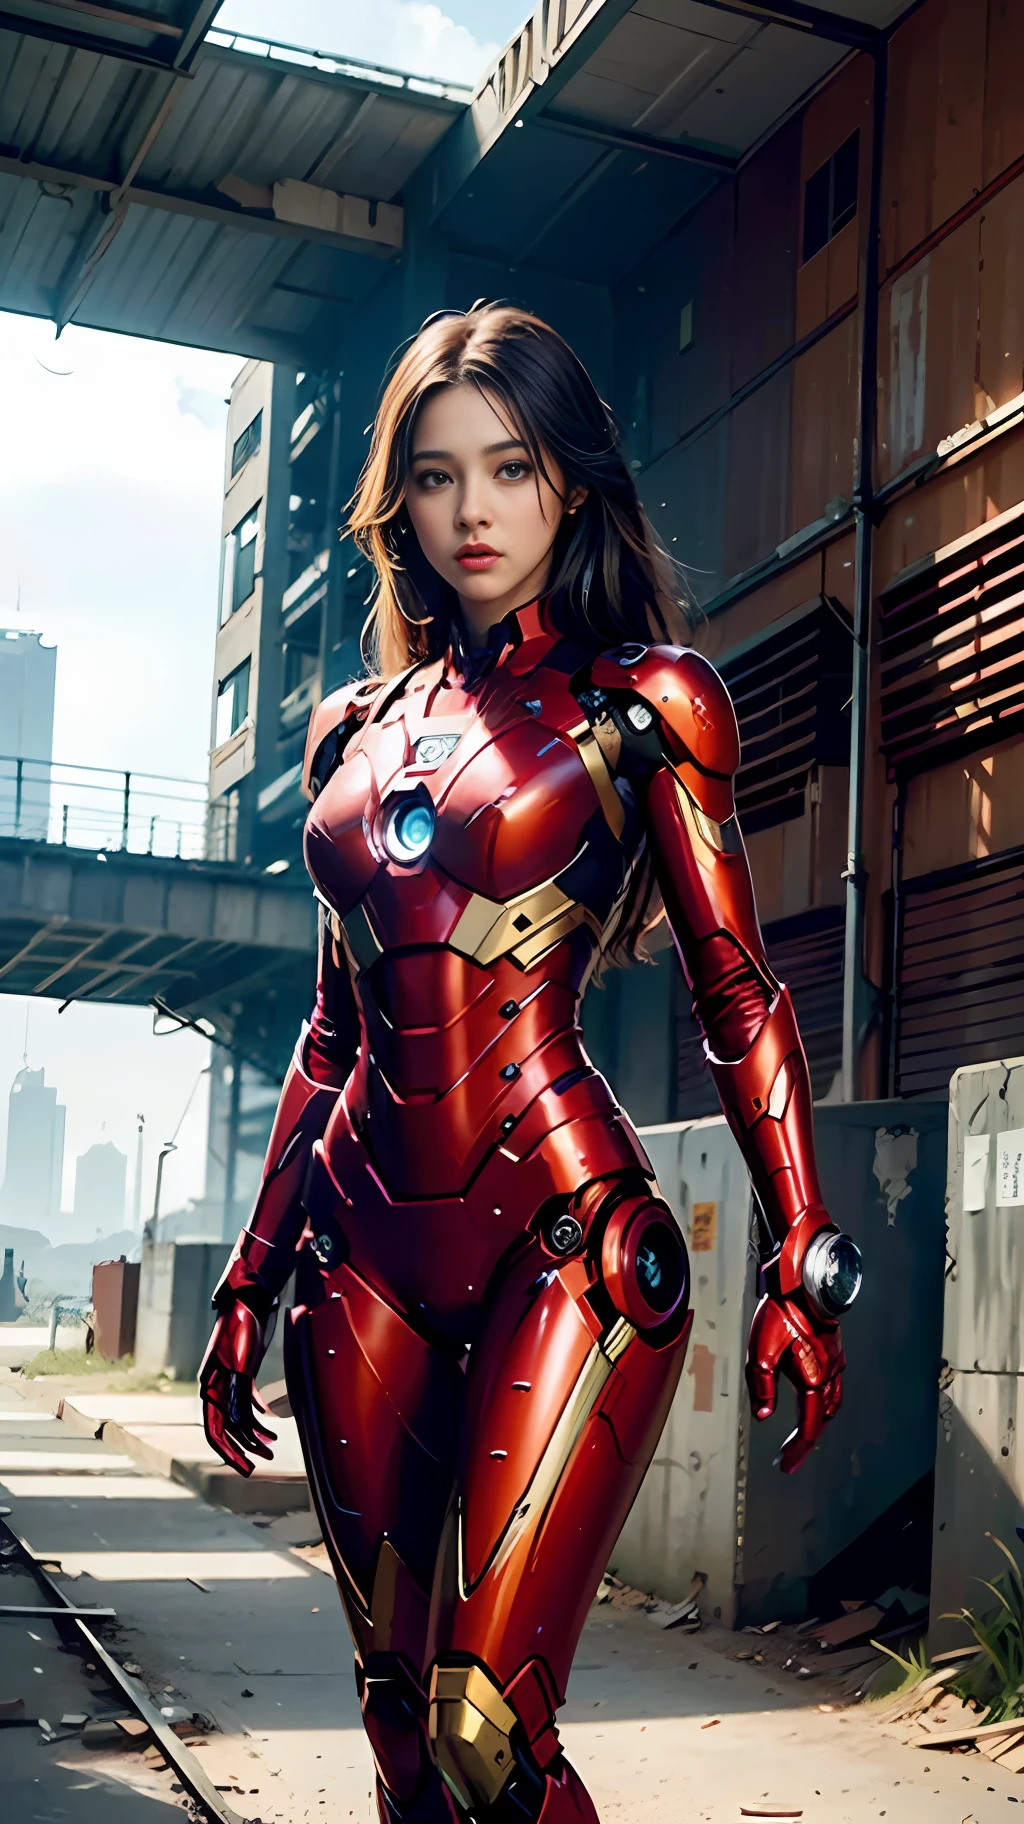 8К, реалистичный, привлекательный, очень подробный, a 20 year old girl a sexy and привлекательный woman inspired by Iron Man wearing a shiny Iron Man mech. Она одевается сексуально и уверенно., отличная интерпретация Железного Человека&#39;сила и харизма. Заброшенный склад служит фоном, создание уникальной атмосферы, подчеркивающей ее храбрость и настойчивость. Облачное небо добавляет всей сцене ощущение напряжения и загадочности.. Это высокое разрешение, высококачественное изображение подарит вам шокирующие визуальные впечатления. Детализированный заброшенный склад и блестящие роботы будут привлекать к вам внимание.. OC-рендеринг, Драматическое освещение, отмеченное наградами качество